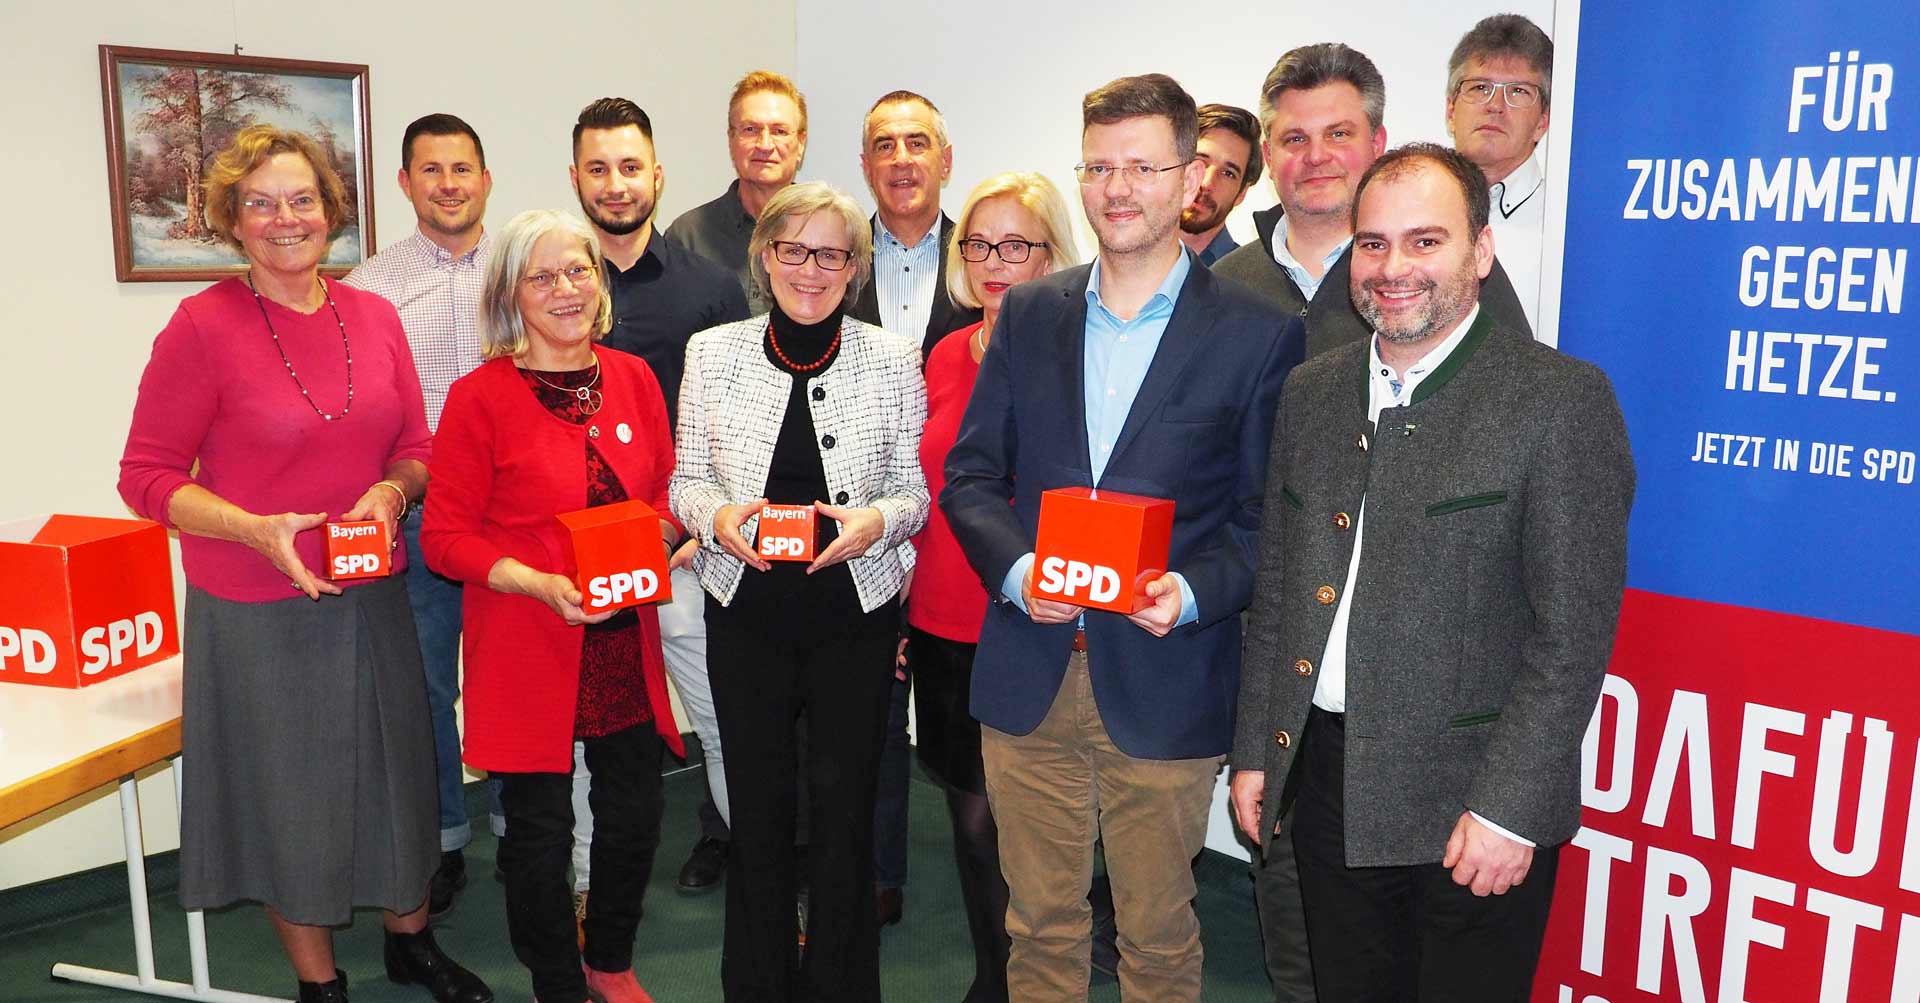 Die SPD-Kandidaten für die Kommunalwahl 2020 mit Spitzenkandidat Stefan Killian (vorne 2. v.r.) und Johanna Werner-Muggendorfer (2. v.l.) sowie SPD-Landratskandidat Stephan Schweiger (Foto: br-medienagentur)